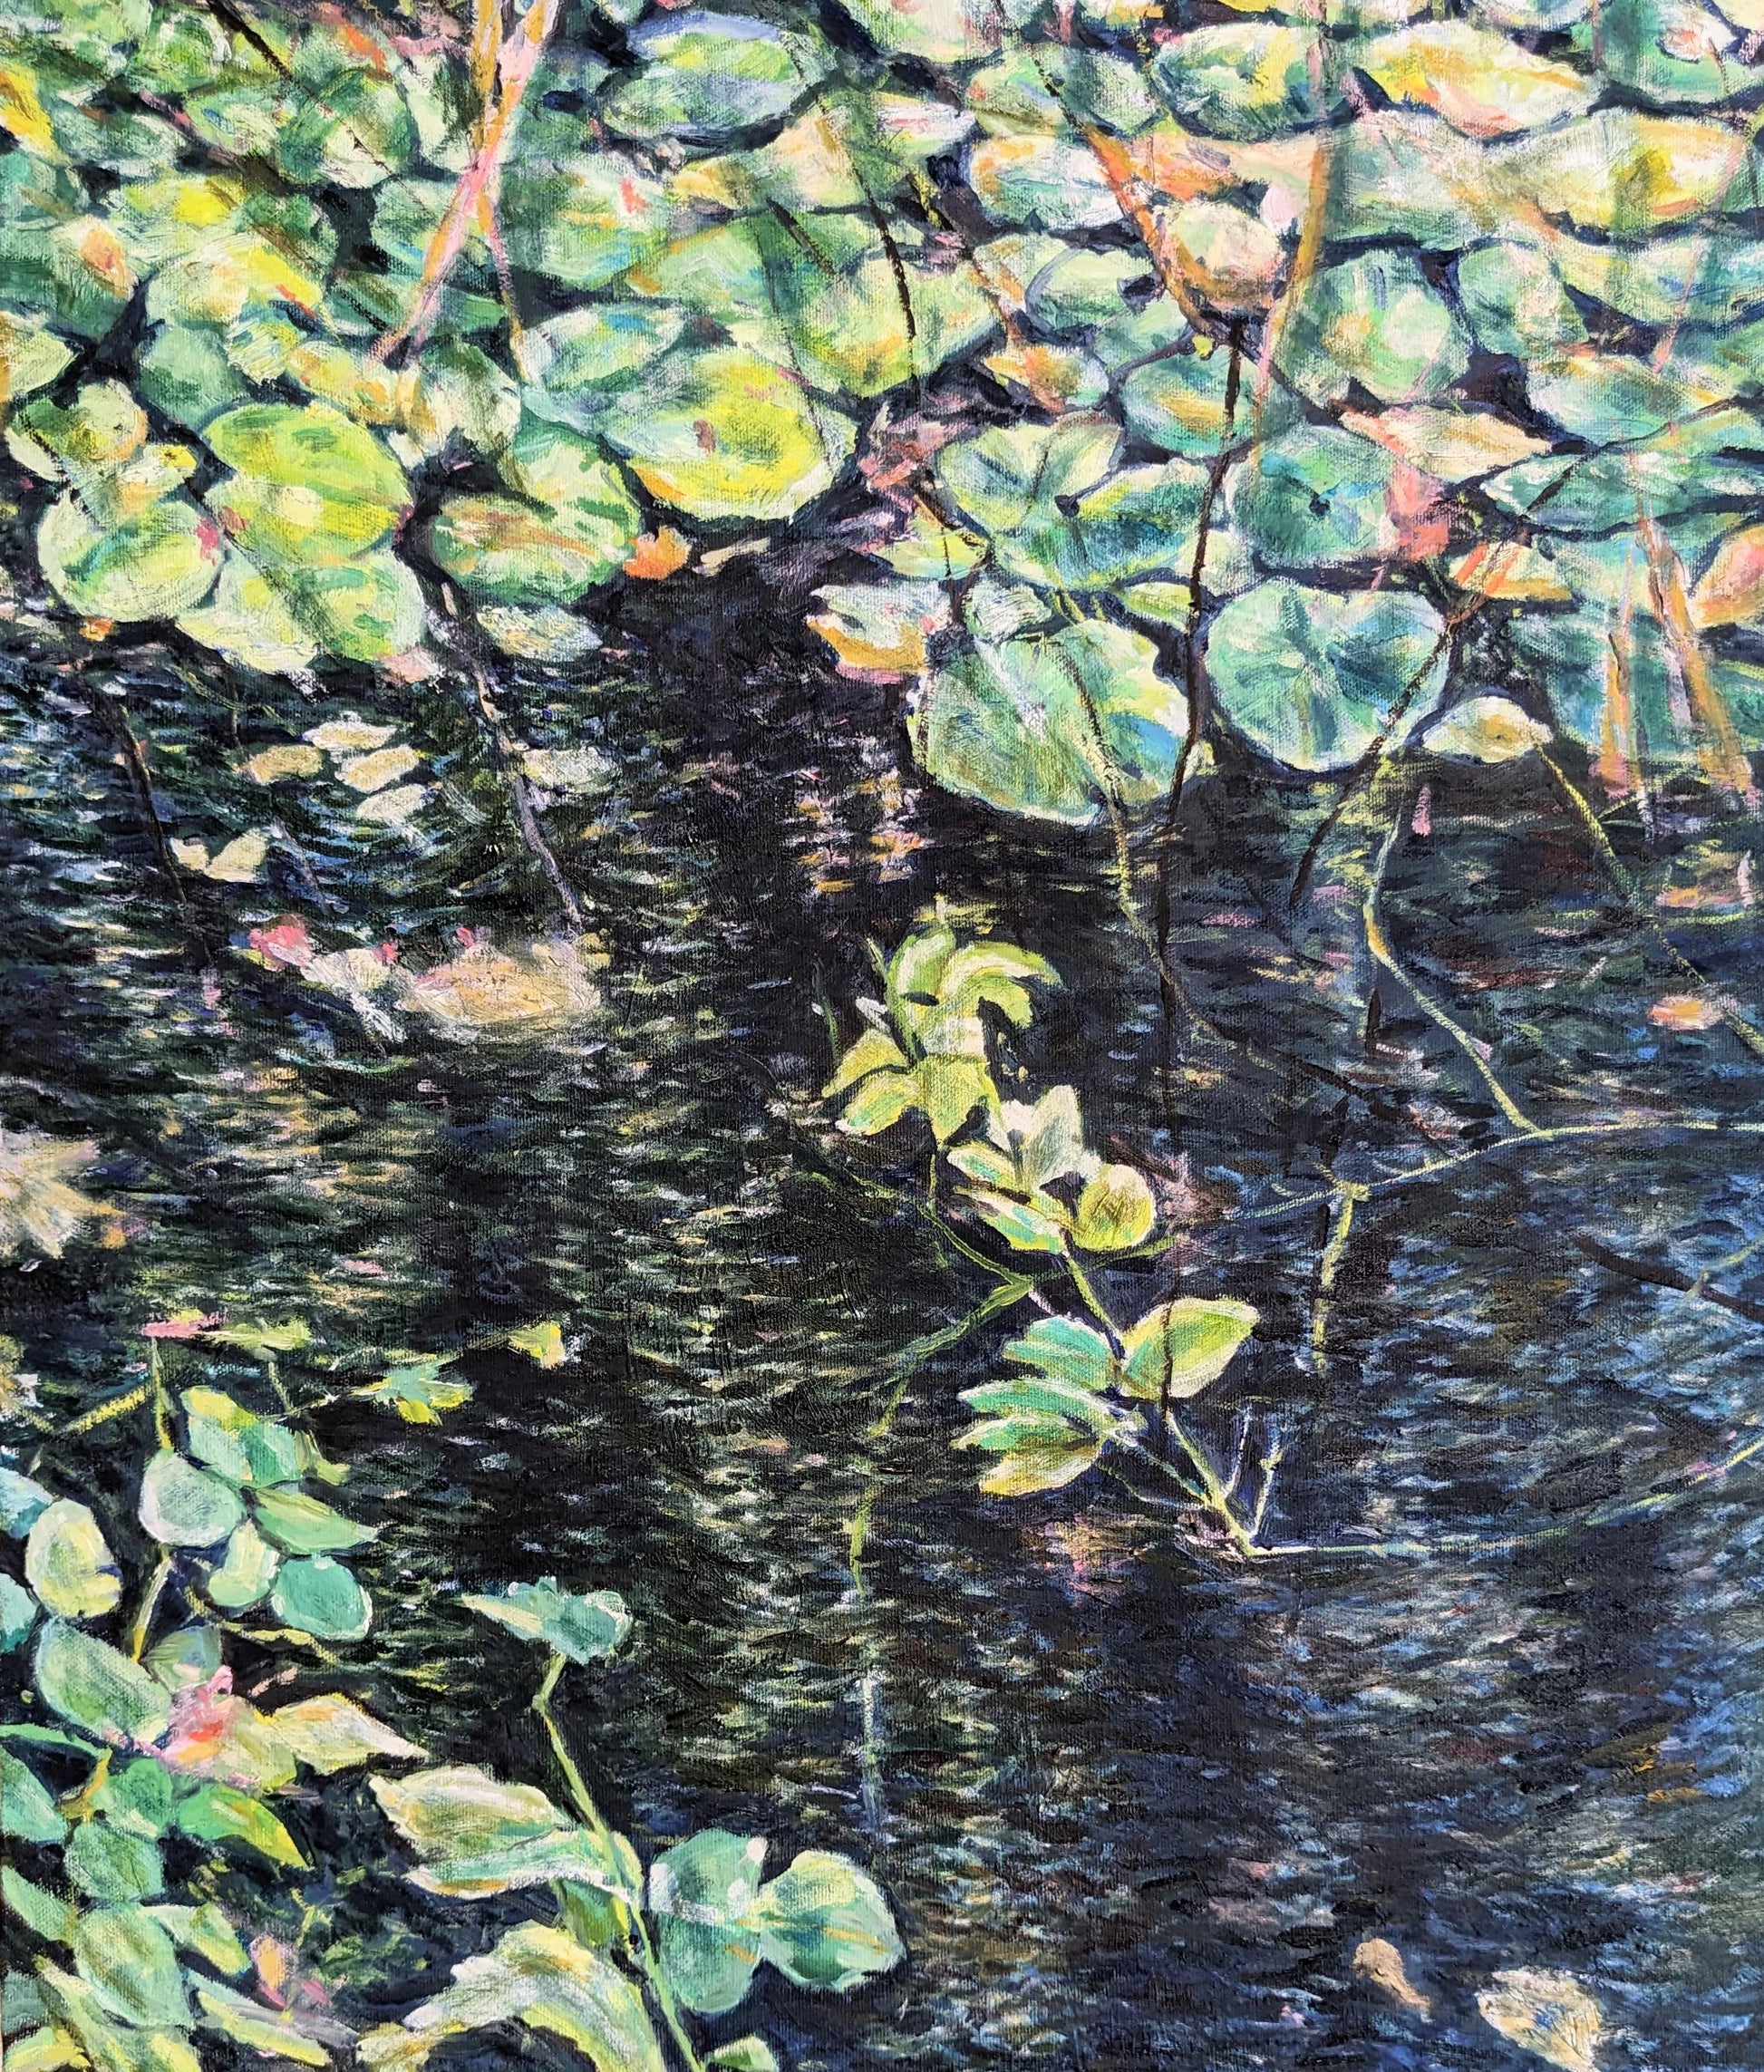 『湧き池(Spring pond)』 - FROM ARTIST